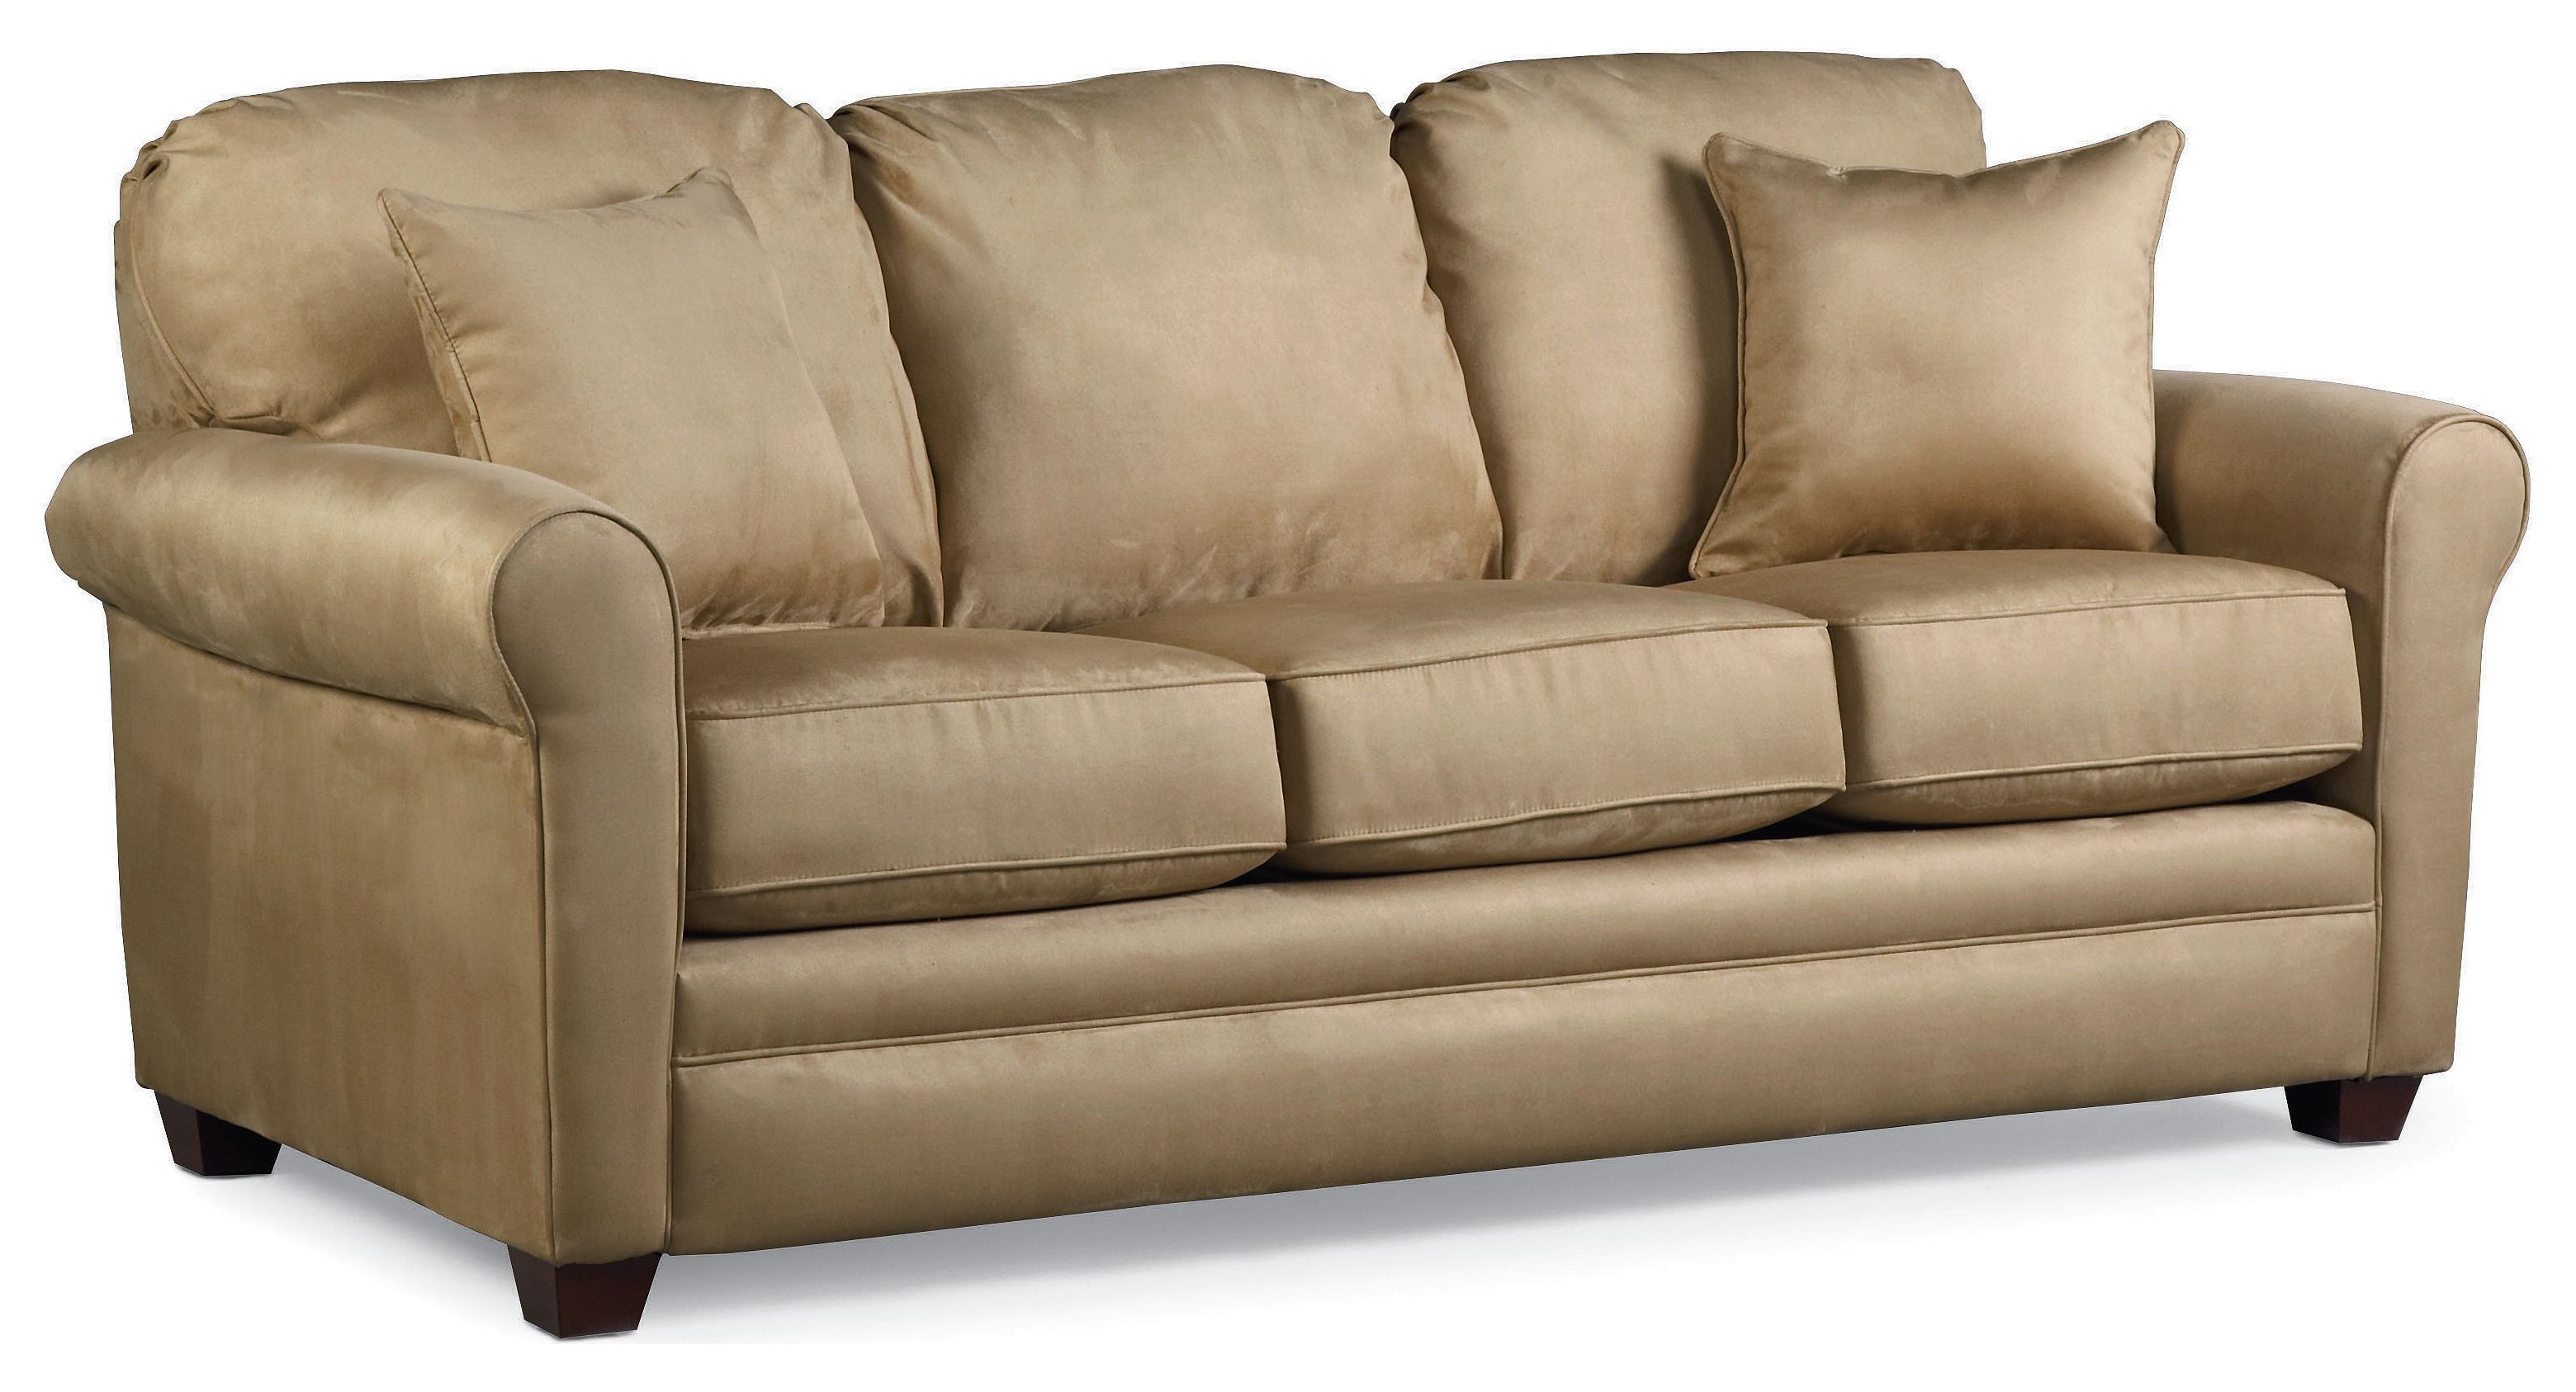 Sleeper Sofa Cheap 8 3019 